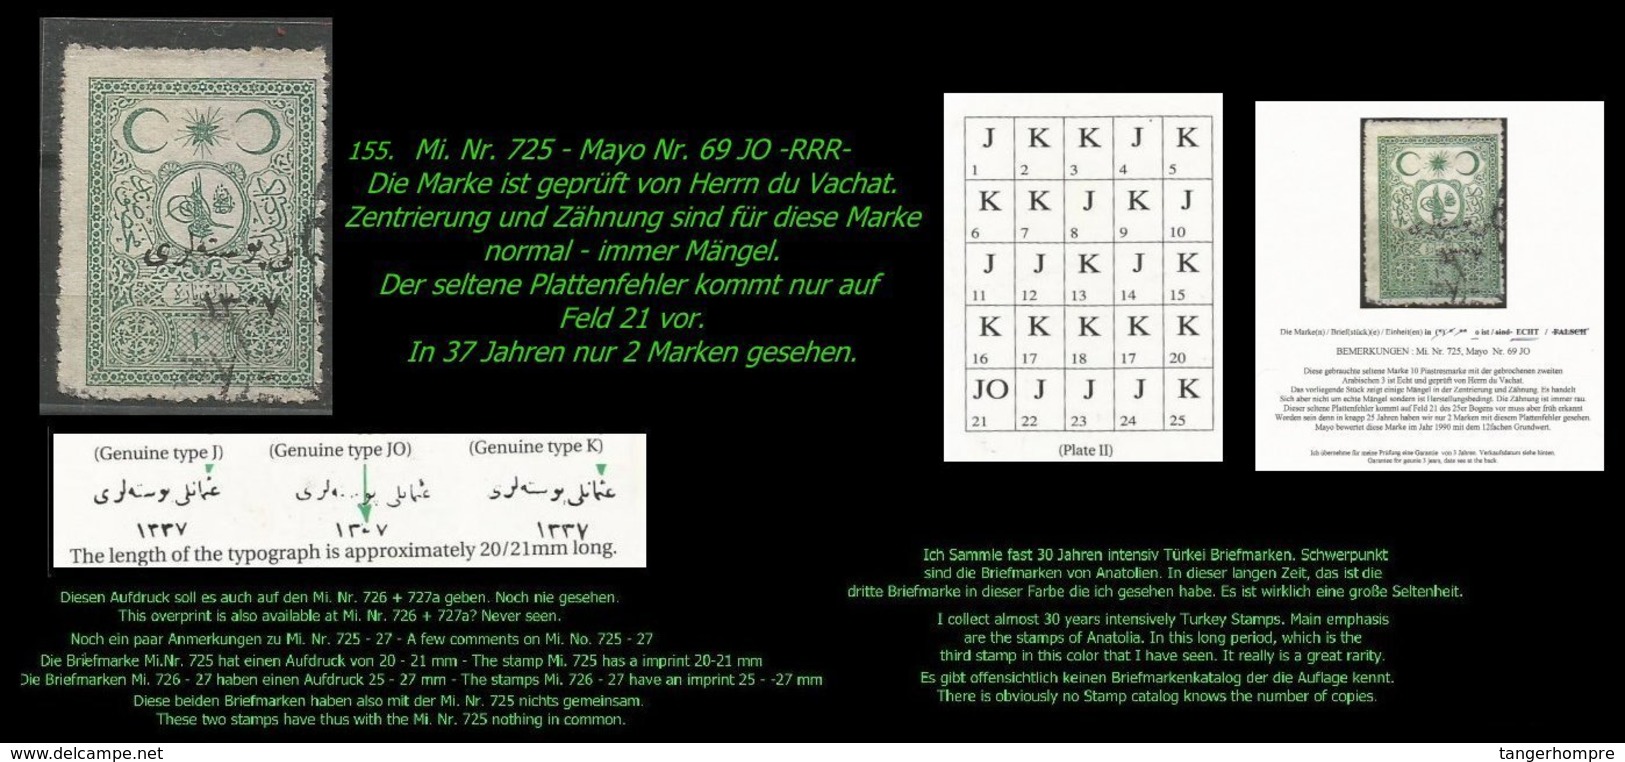 EARLY OTTOMAN SPECIALIZED FOR SPECIALIST, SEE...Mi. Nr. 725 - Mayo 69 JO - Auflagenanteil ??? Stück -RRR- - 1920-21 Anatolia